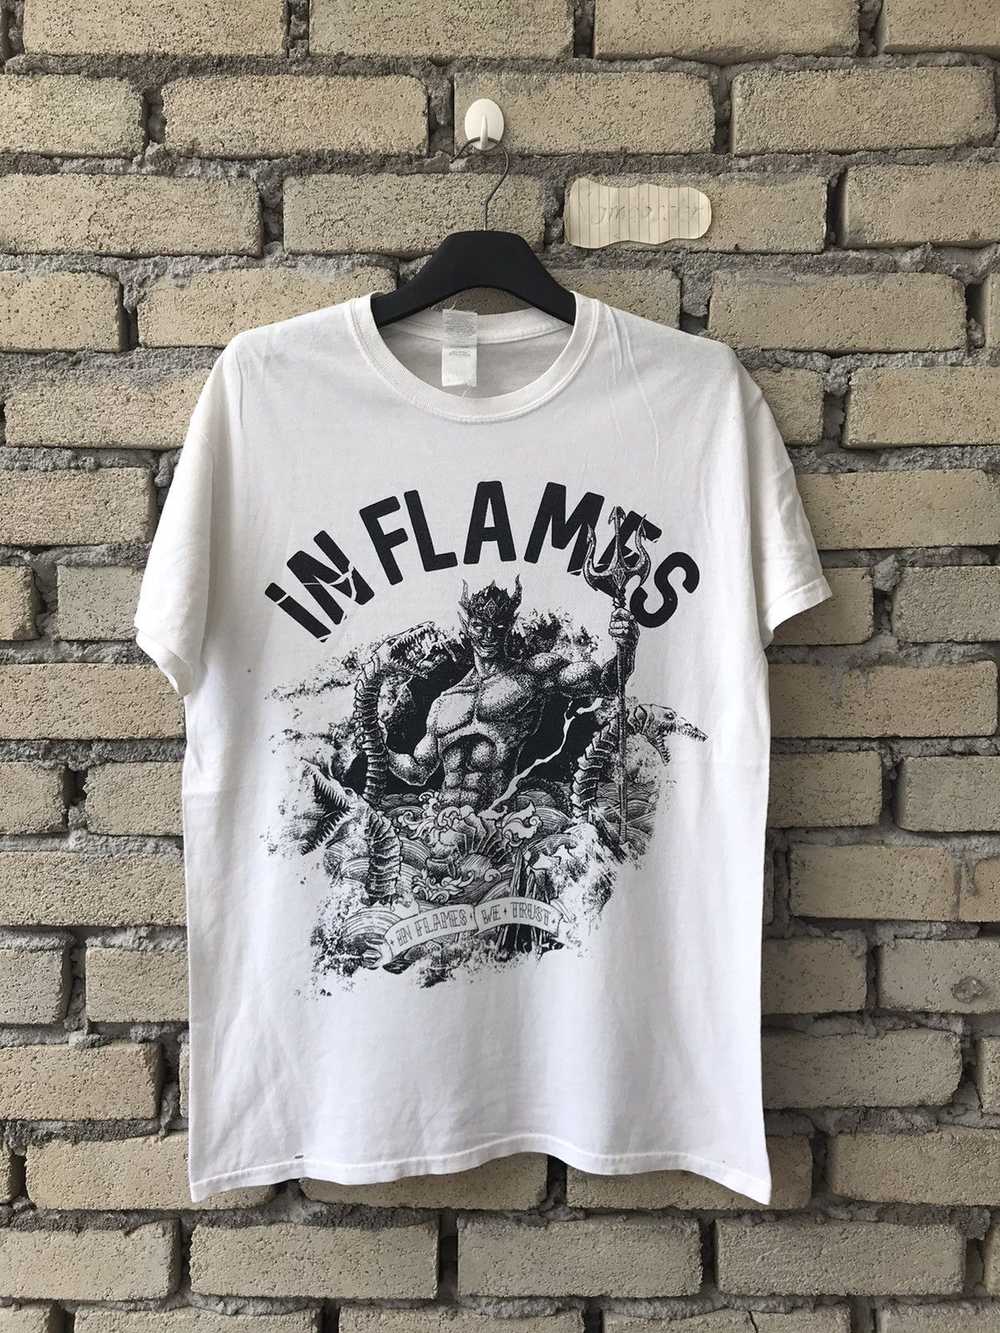 Band Tees × Gildan × Rock T Shirt In Flames Band … - image 1